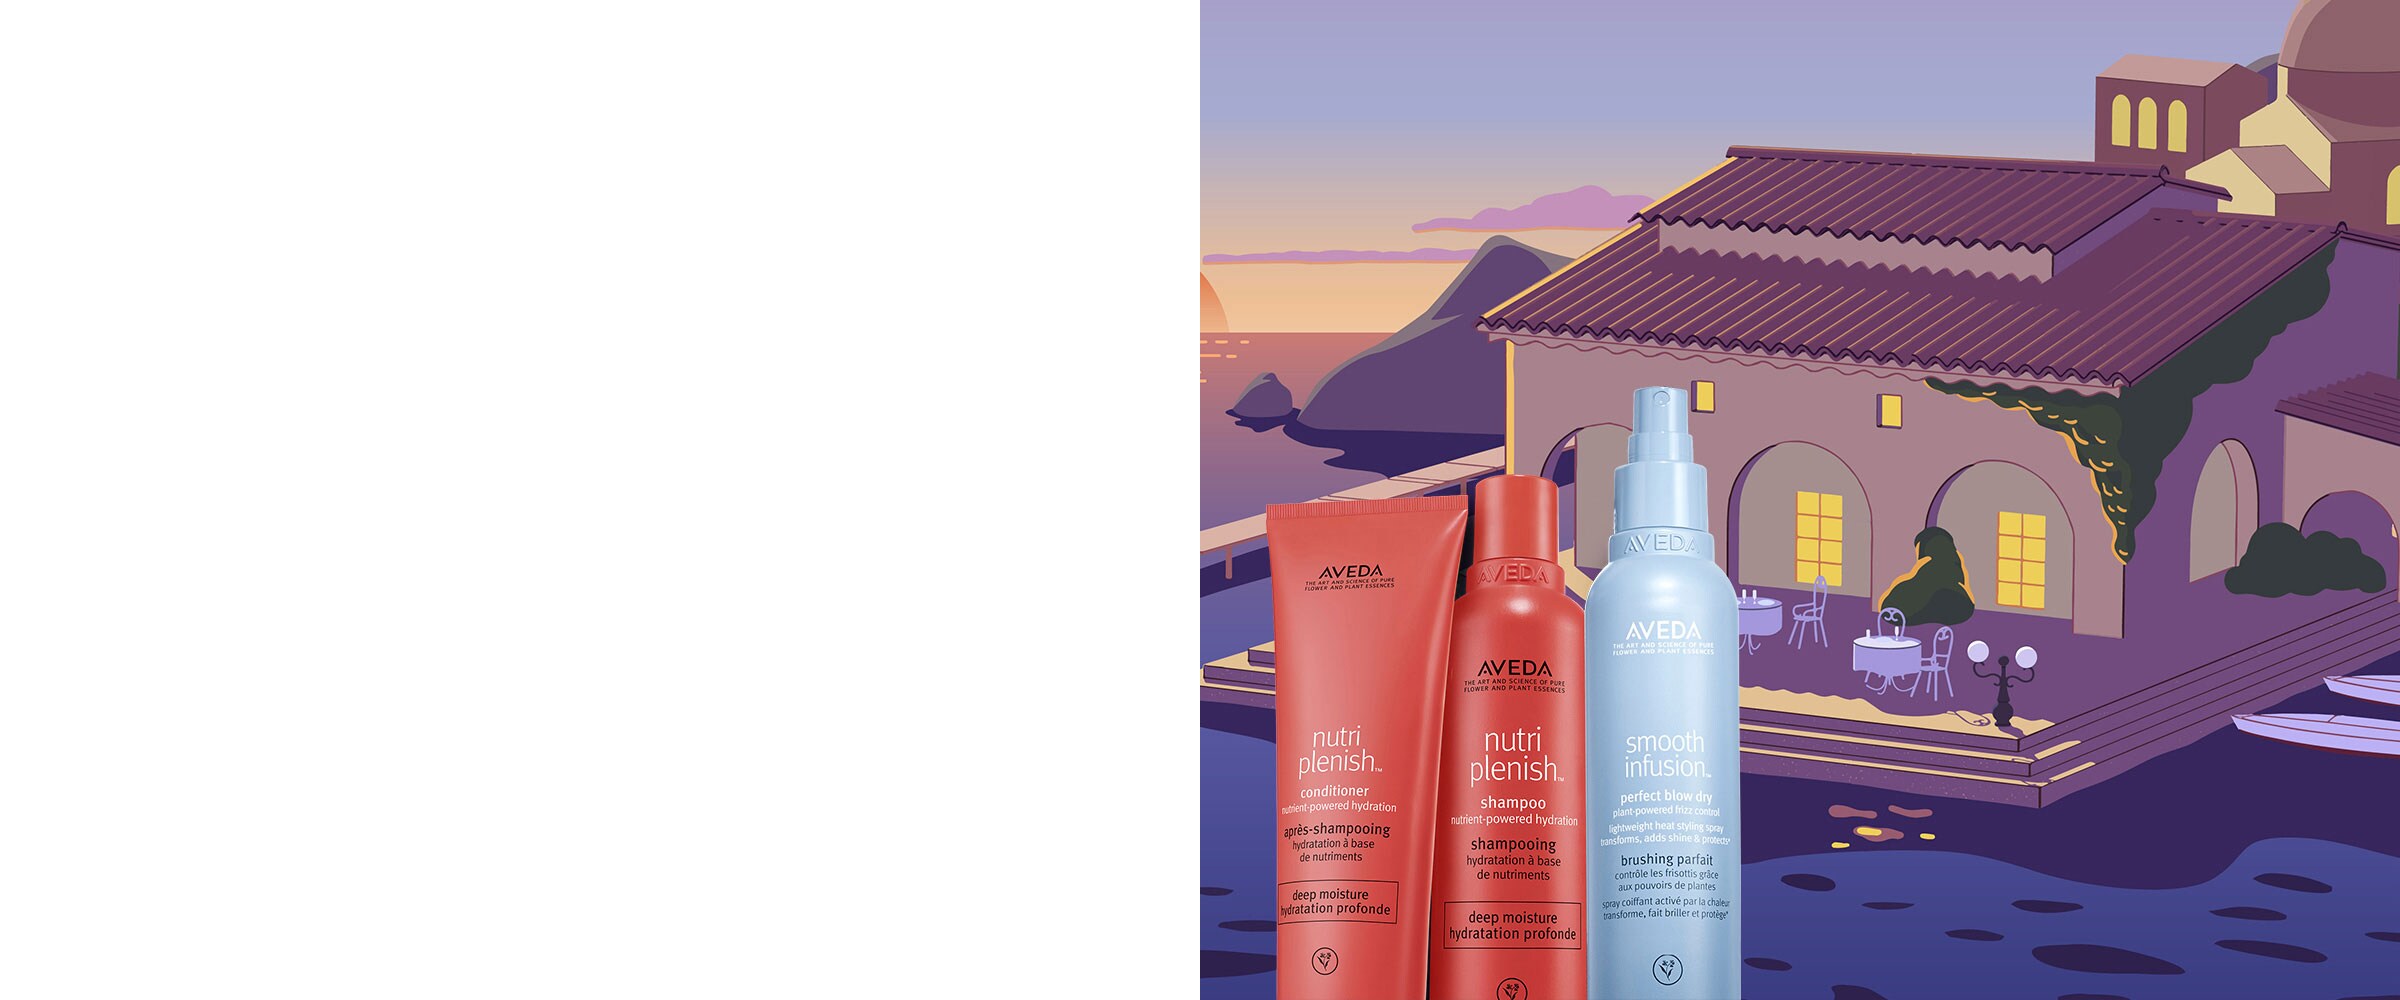 Lege nutriplenish deep shampoo und coditioner & smooth infusion perfect blow dry in den Warenkorb, um Frizz zu bekämpfen.